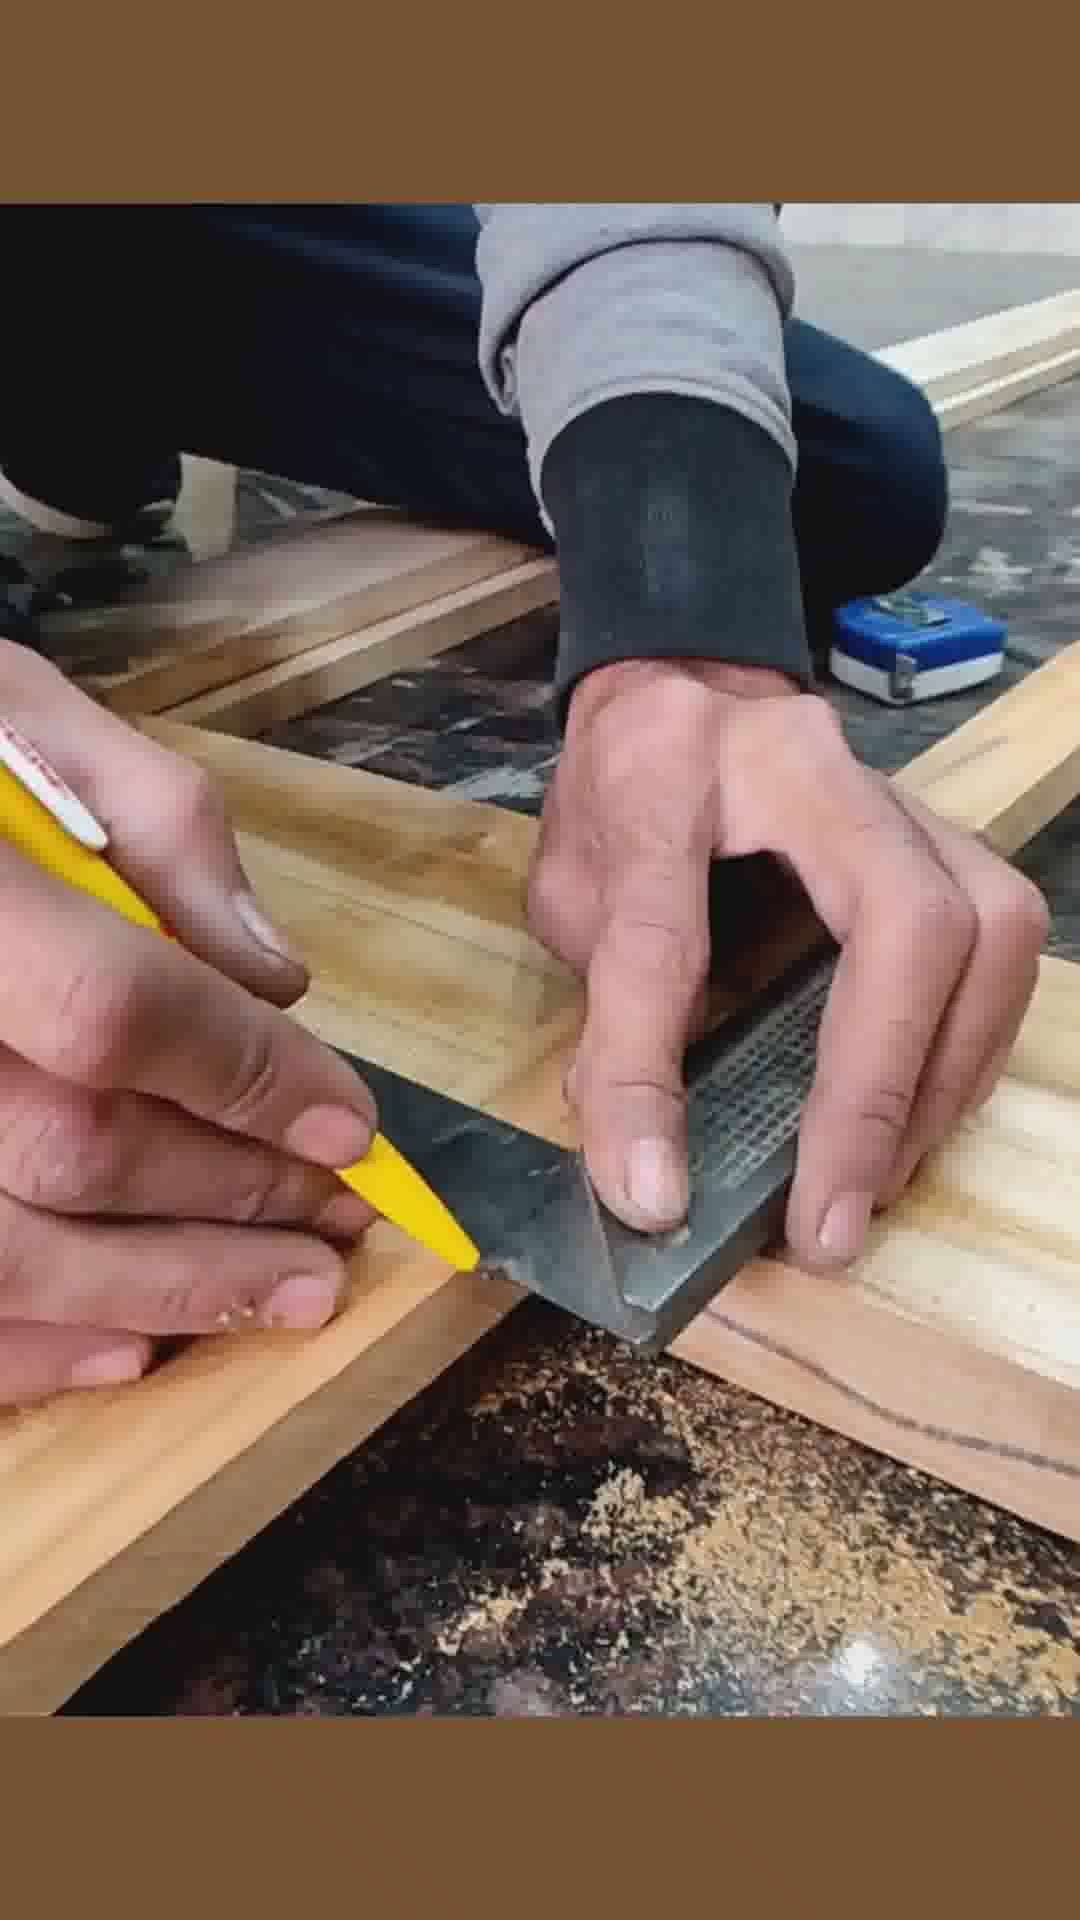 carpenter woodworking skills

#FrontDoor